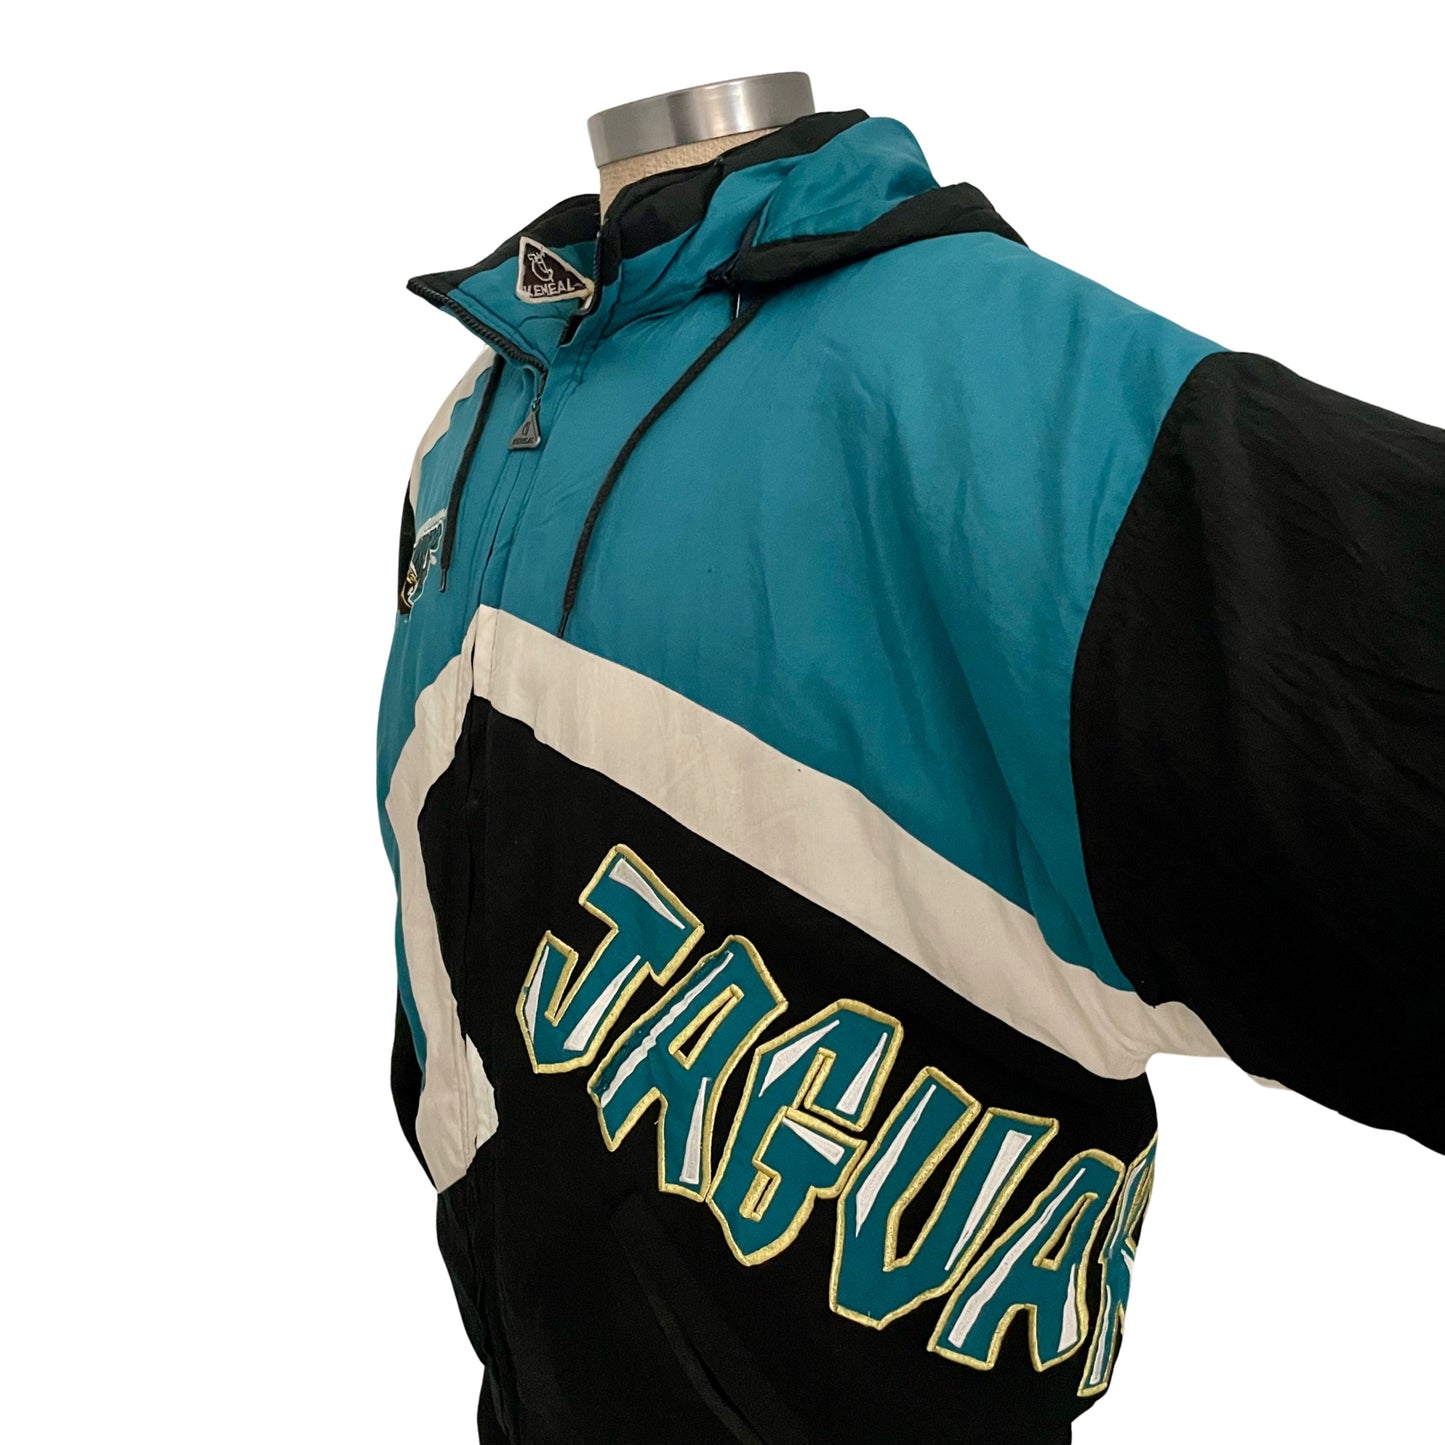 Vintage Jacksonville Jaguars RARE banned logo jacket size LARGE